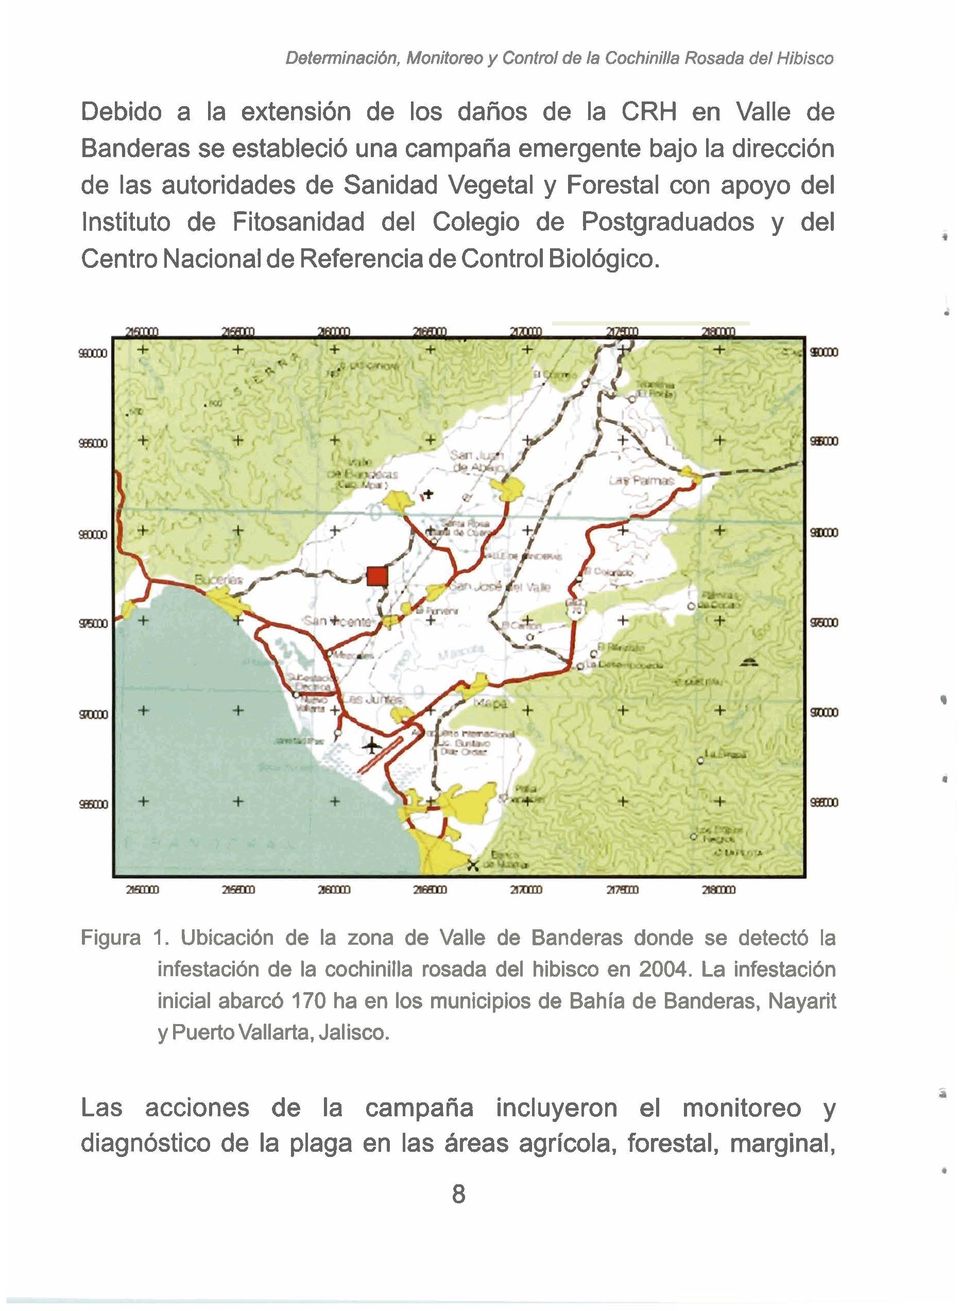 Biológico. Figura 1. Ubicación de la zona de Valle de Banderas donde se detectó la infestación de la cochinilla rosada del hibisco en 2004.